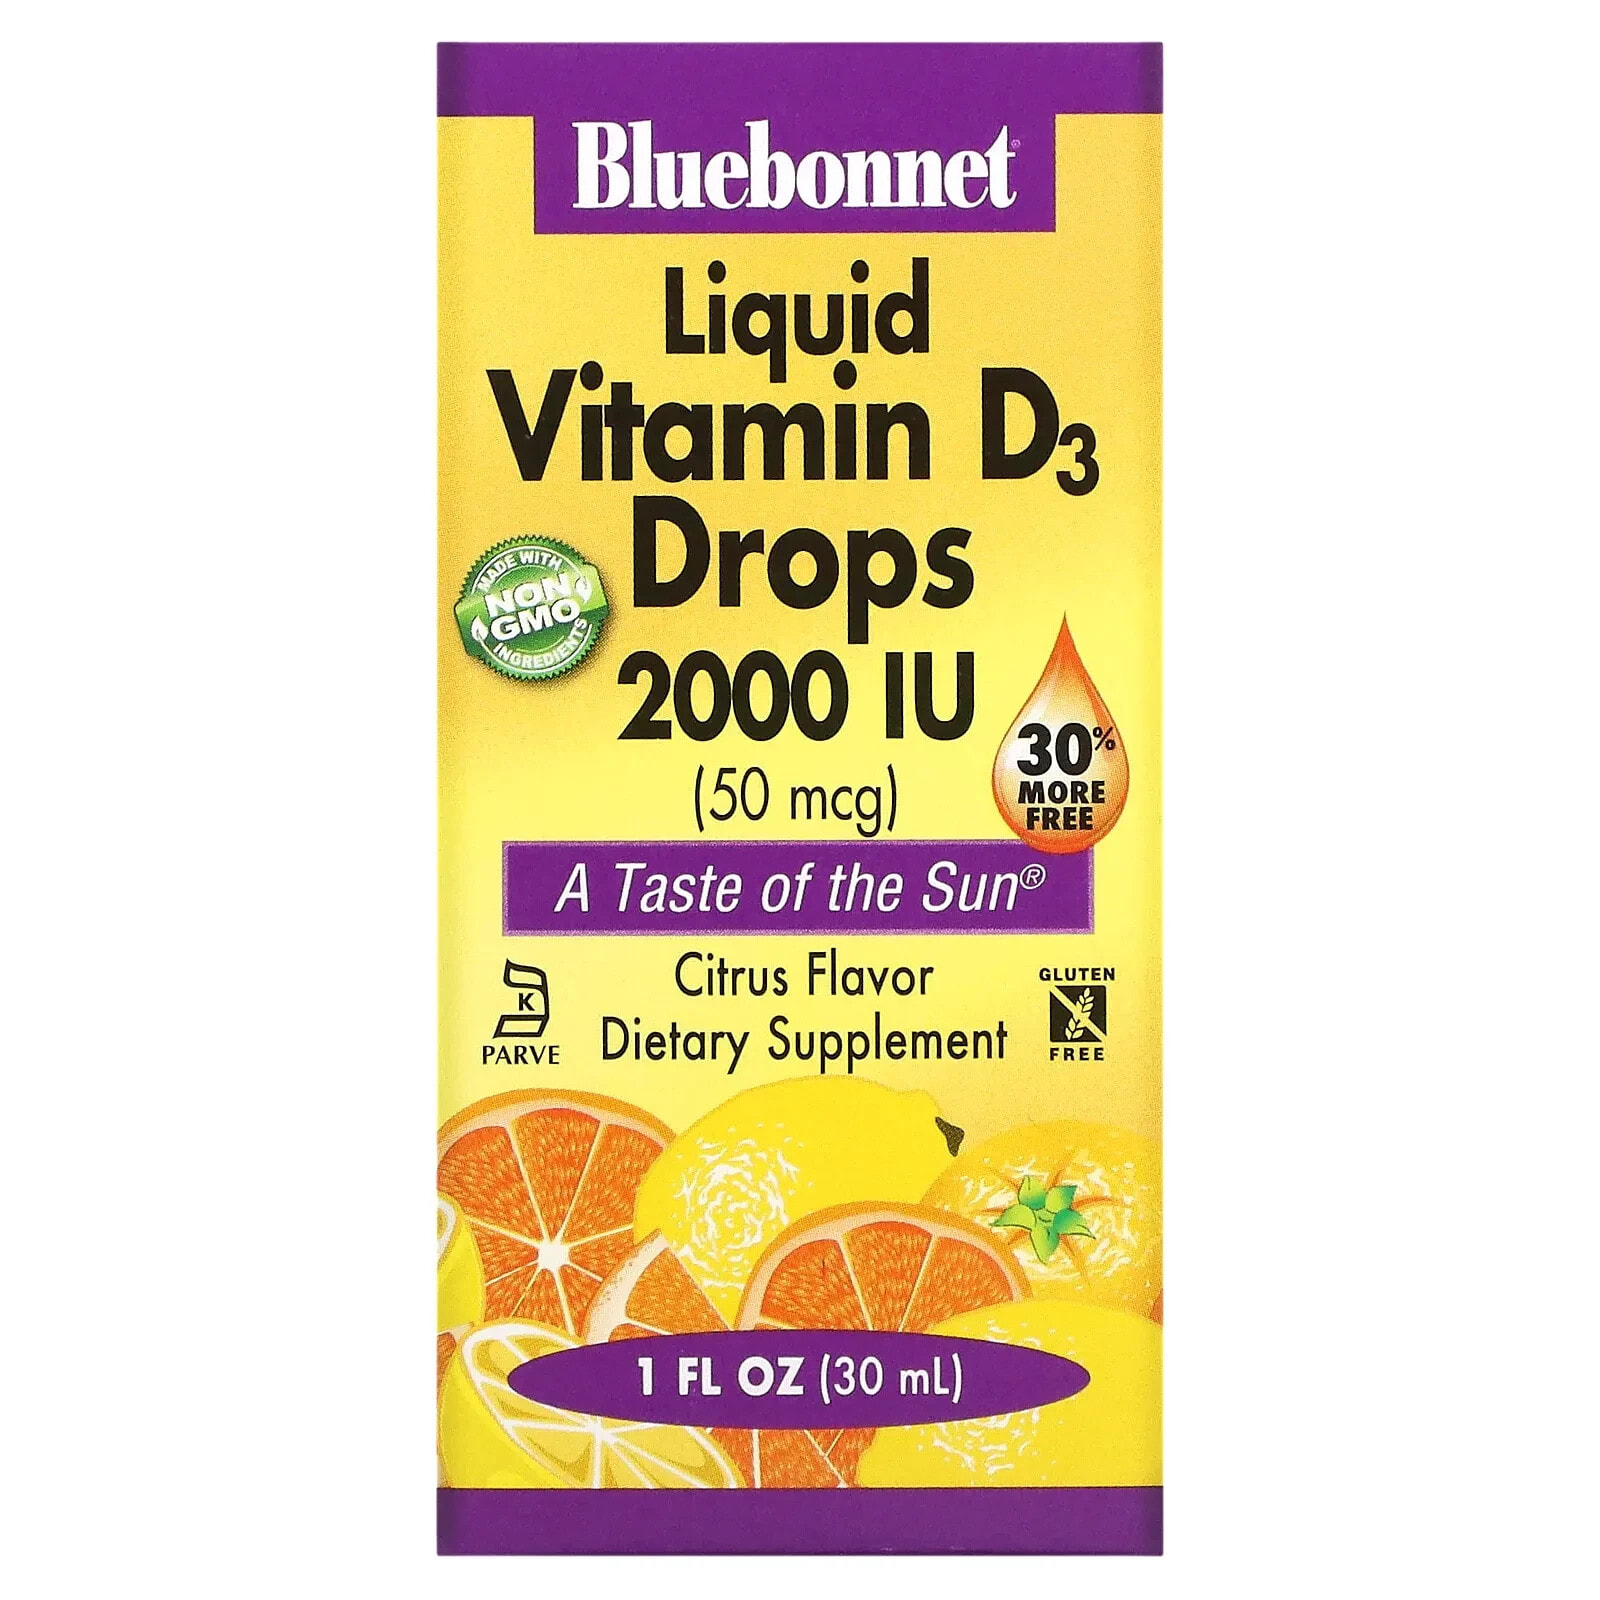 Liquid Vitamin D3 Drops, Citrus, 10 mcg (400 IU), 1 fl oz (30 ml)